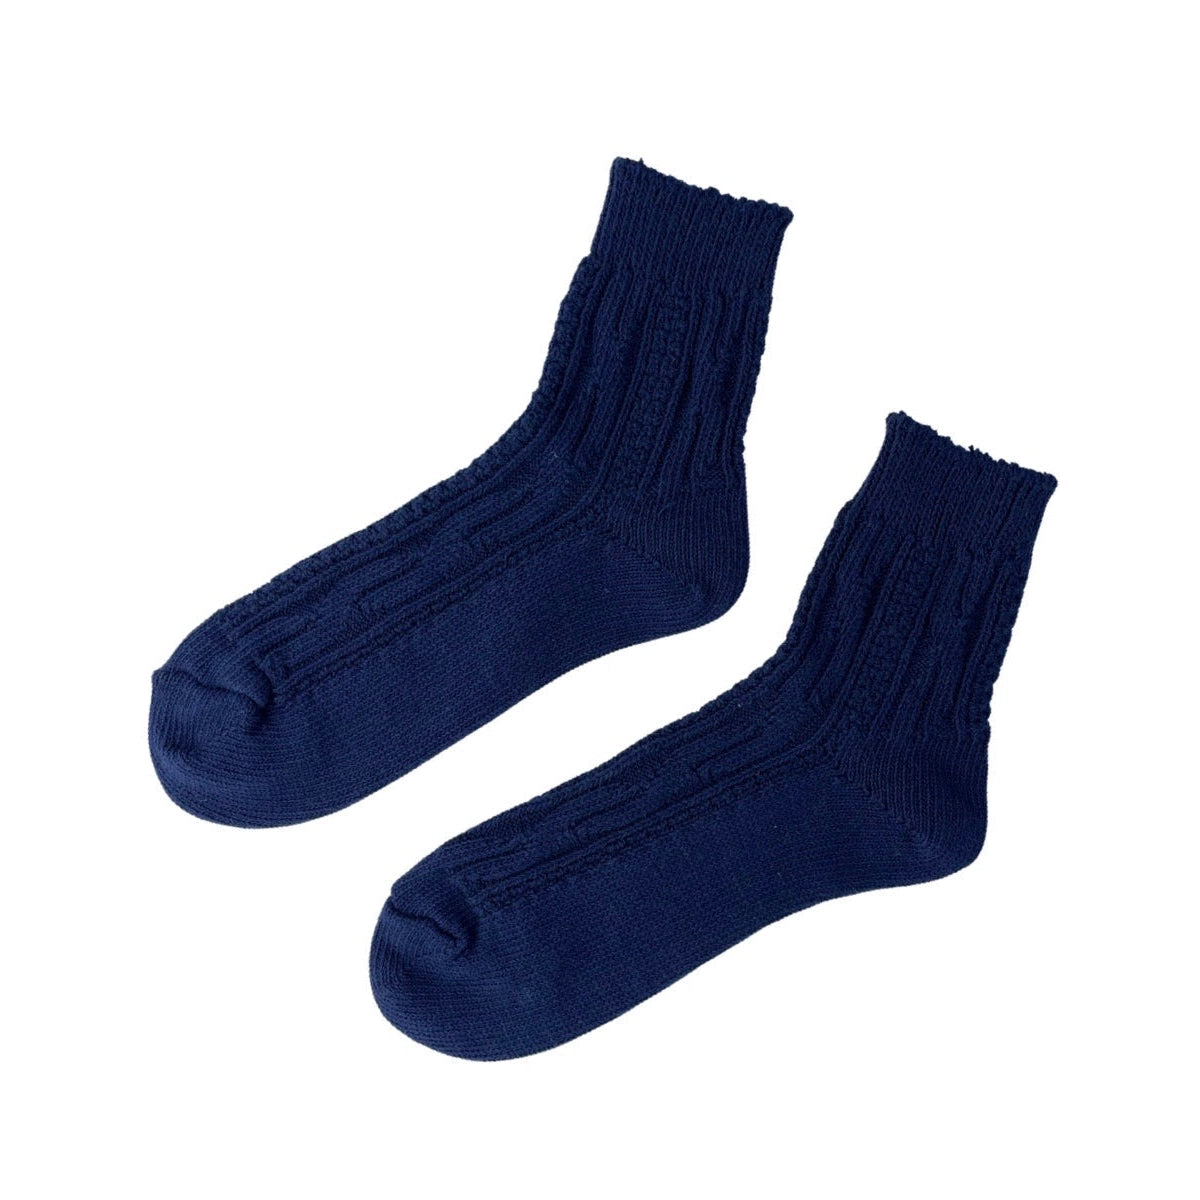 Cotton Jenny Socks - Navy Blue